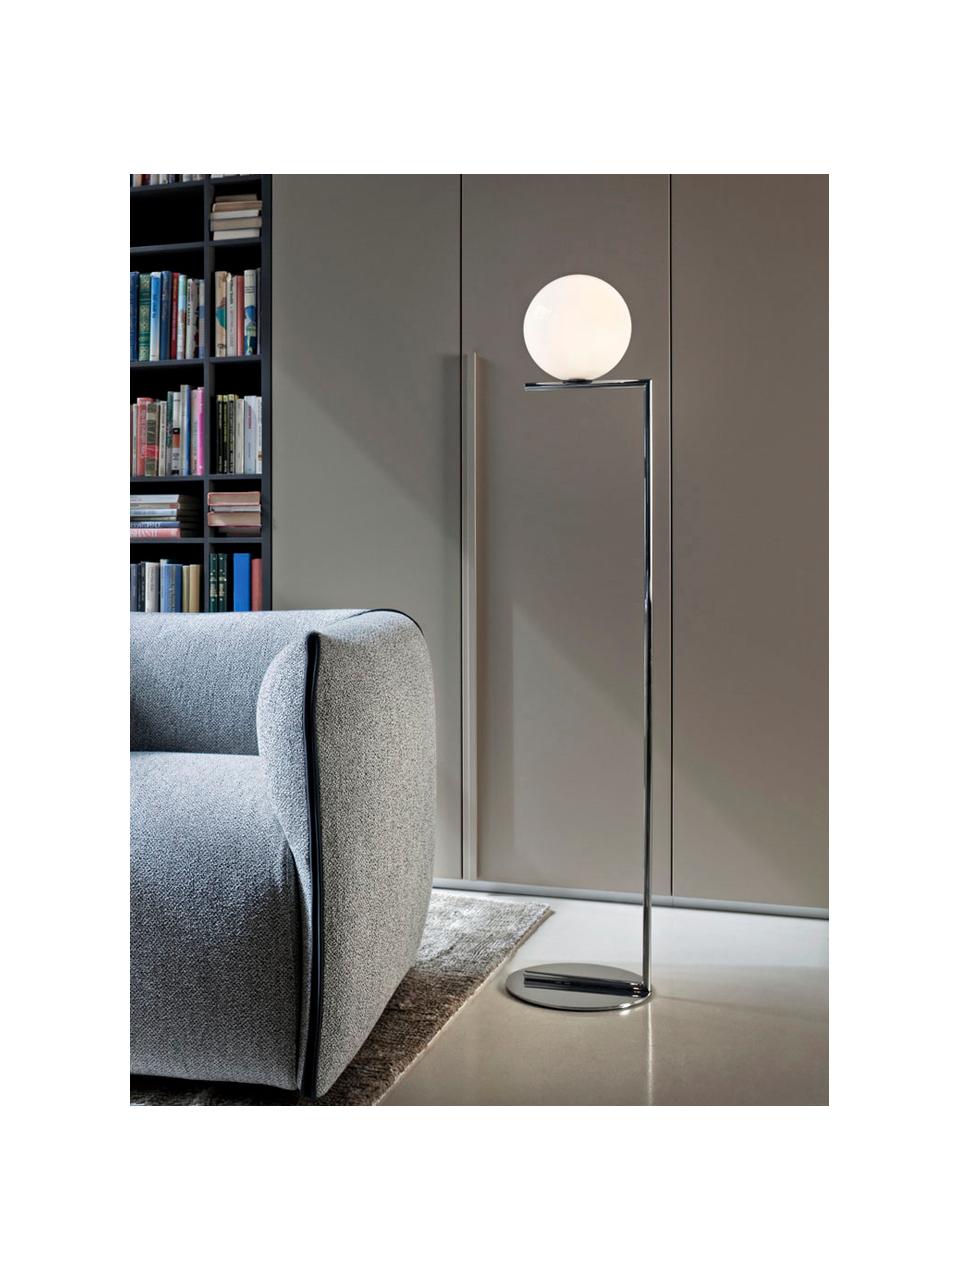 Lámpara de pie regulable soplada artesanalmente IC Lights, Pantalla: vidrio, Estructura: metal recubierto, Cable: plástico, Plateado, blanco, Al 135 cm